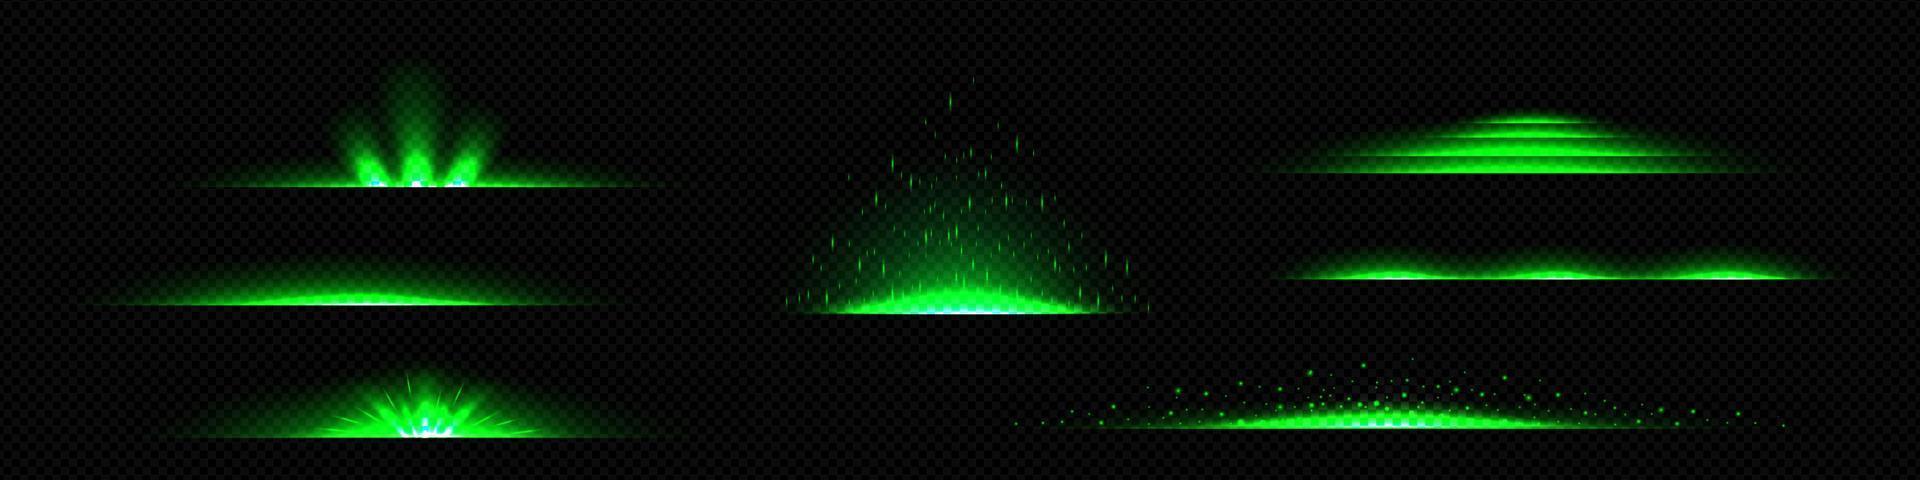 realistischer satz von neongrünen lichtlinienteilern vektor